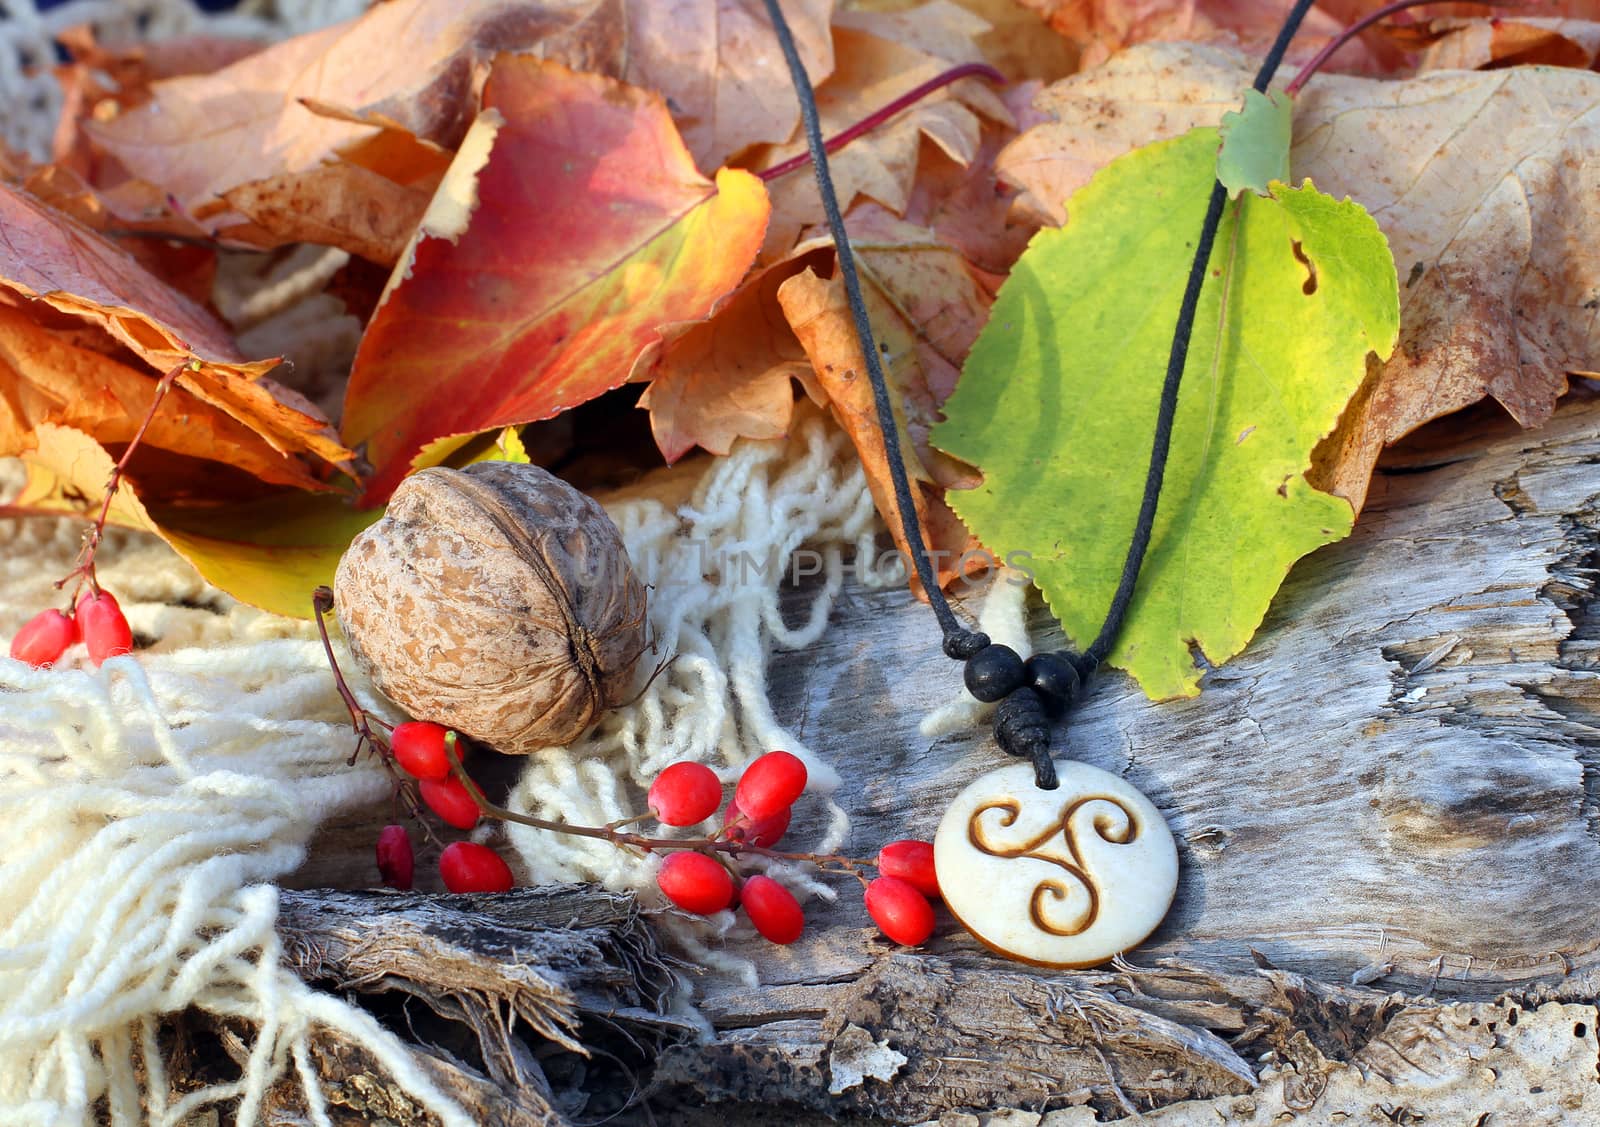 Ethnic handmade bone magic chineese amulet on autumn-style background